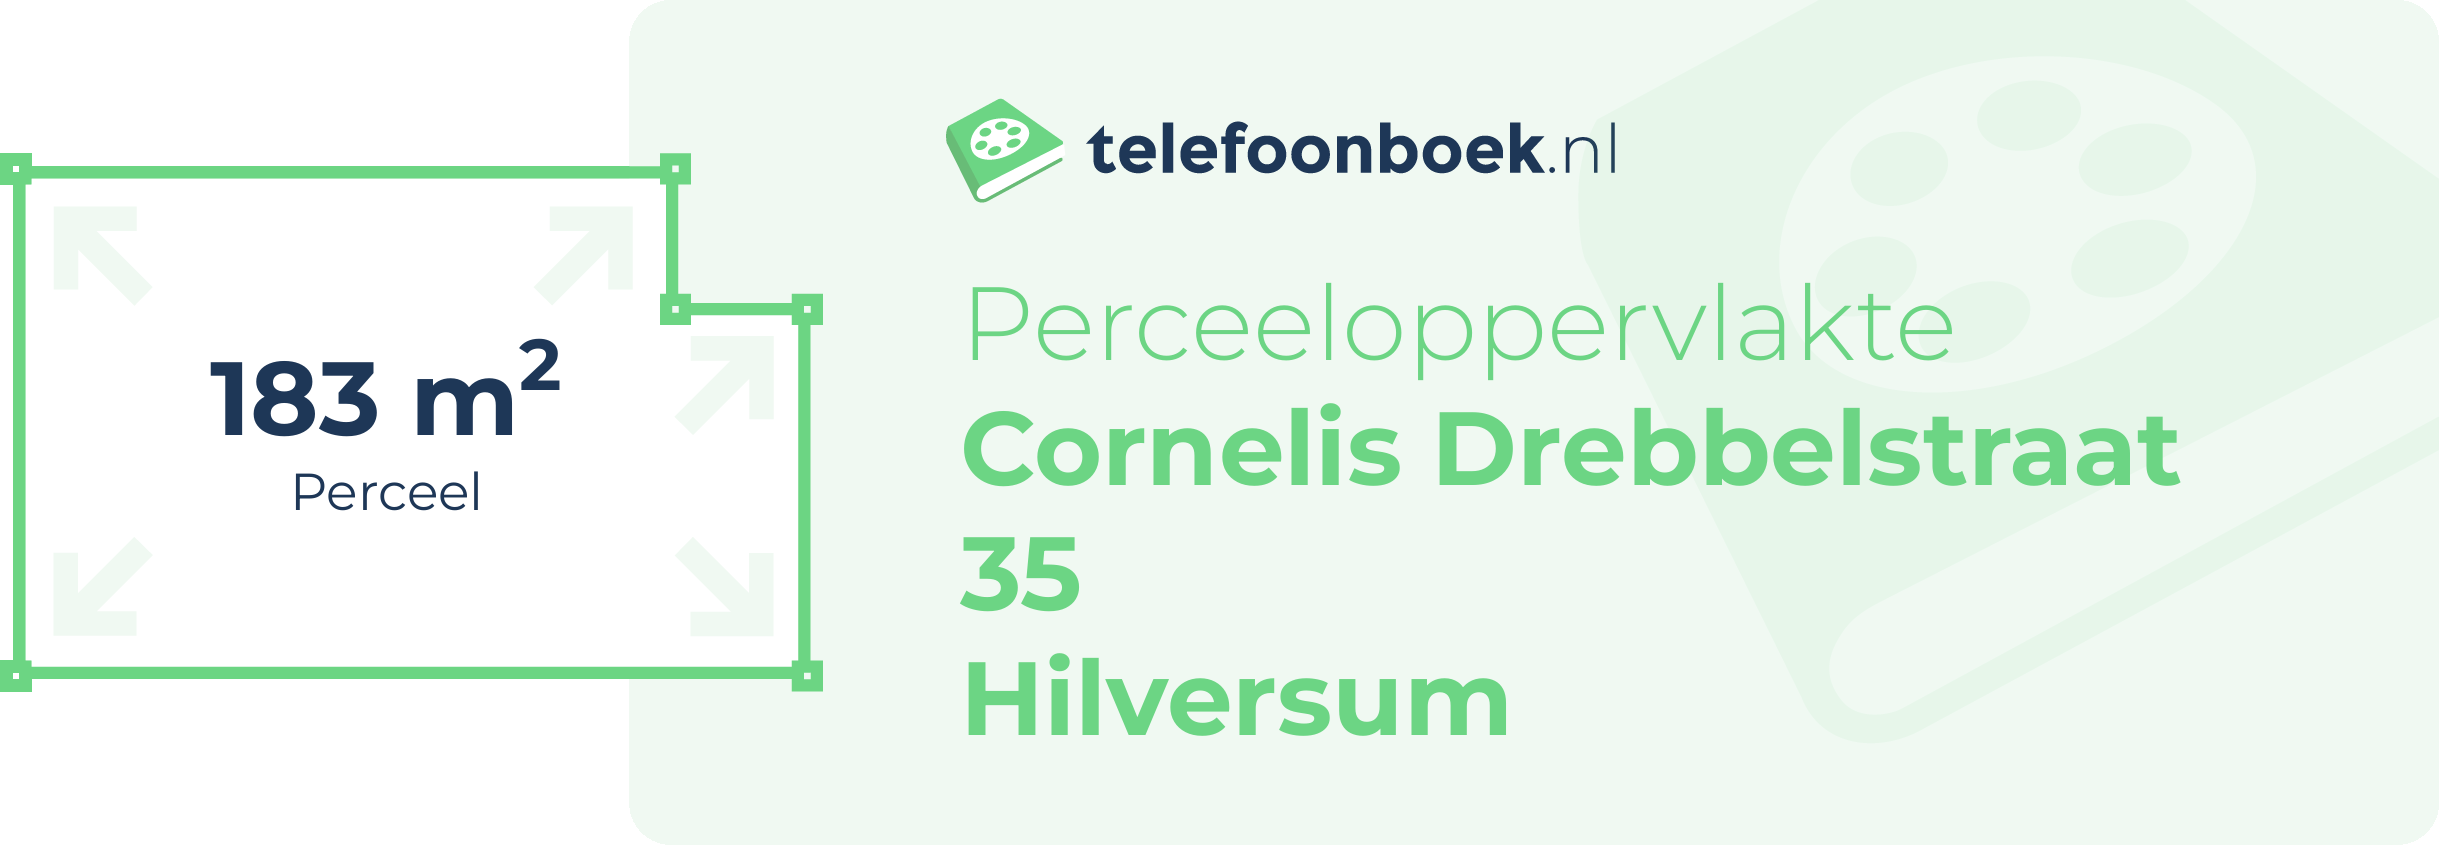 Perceeloppervlakte Cornelis Drebbelstraat 35 Hilversum